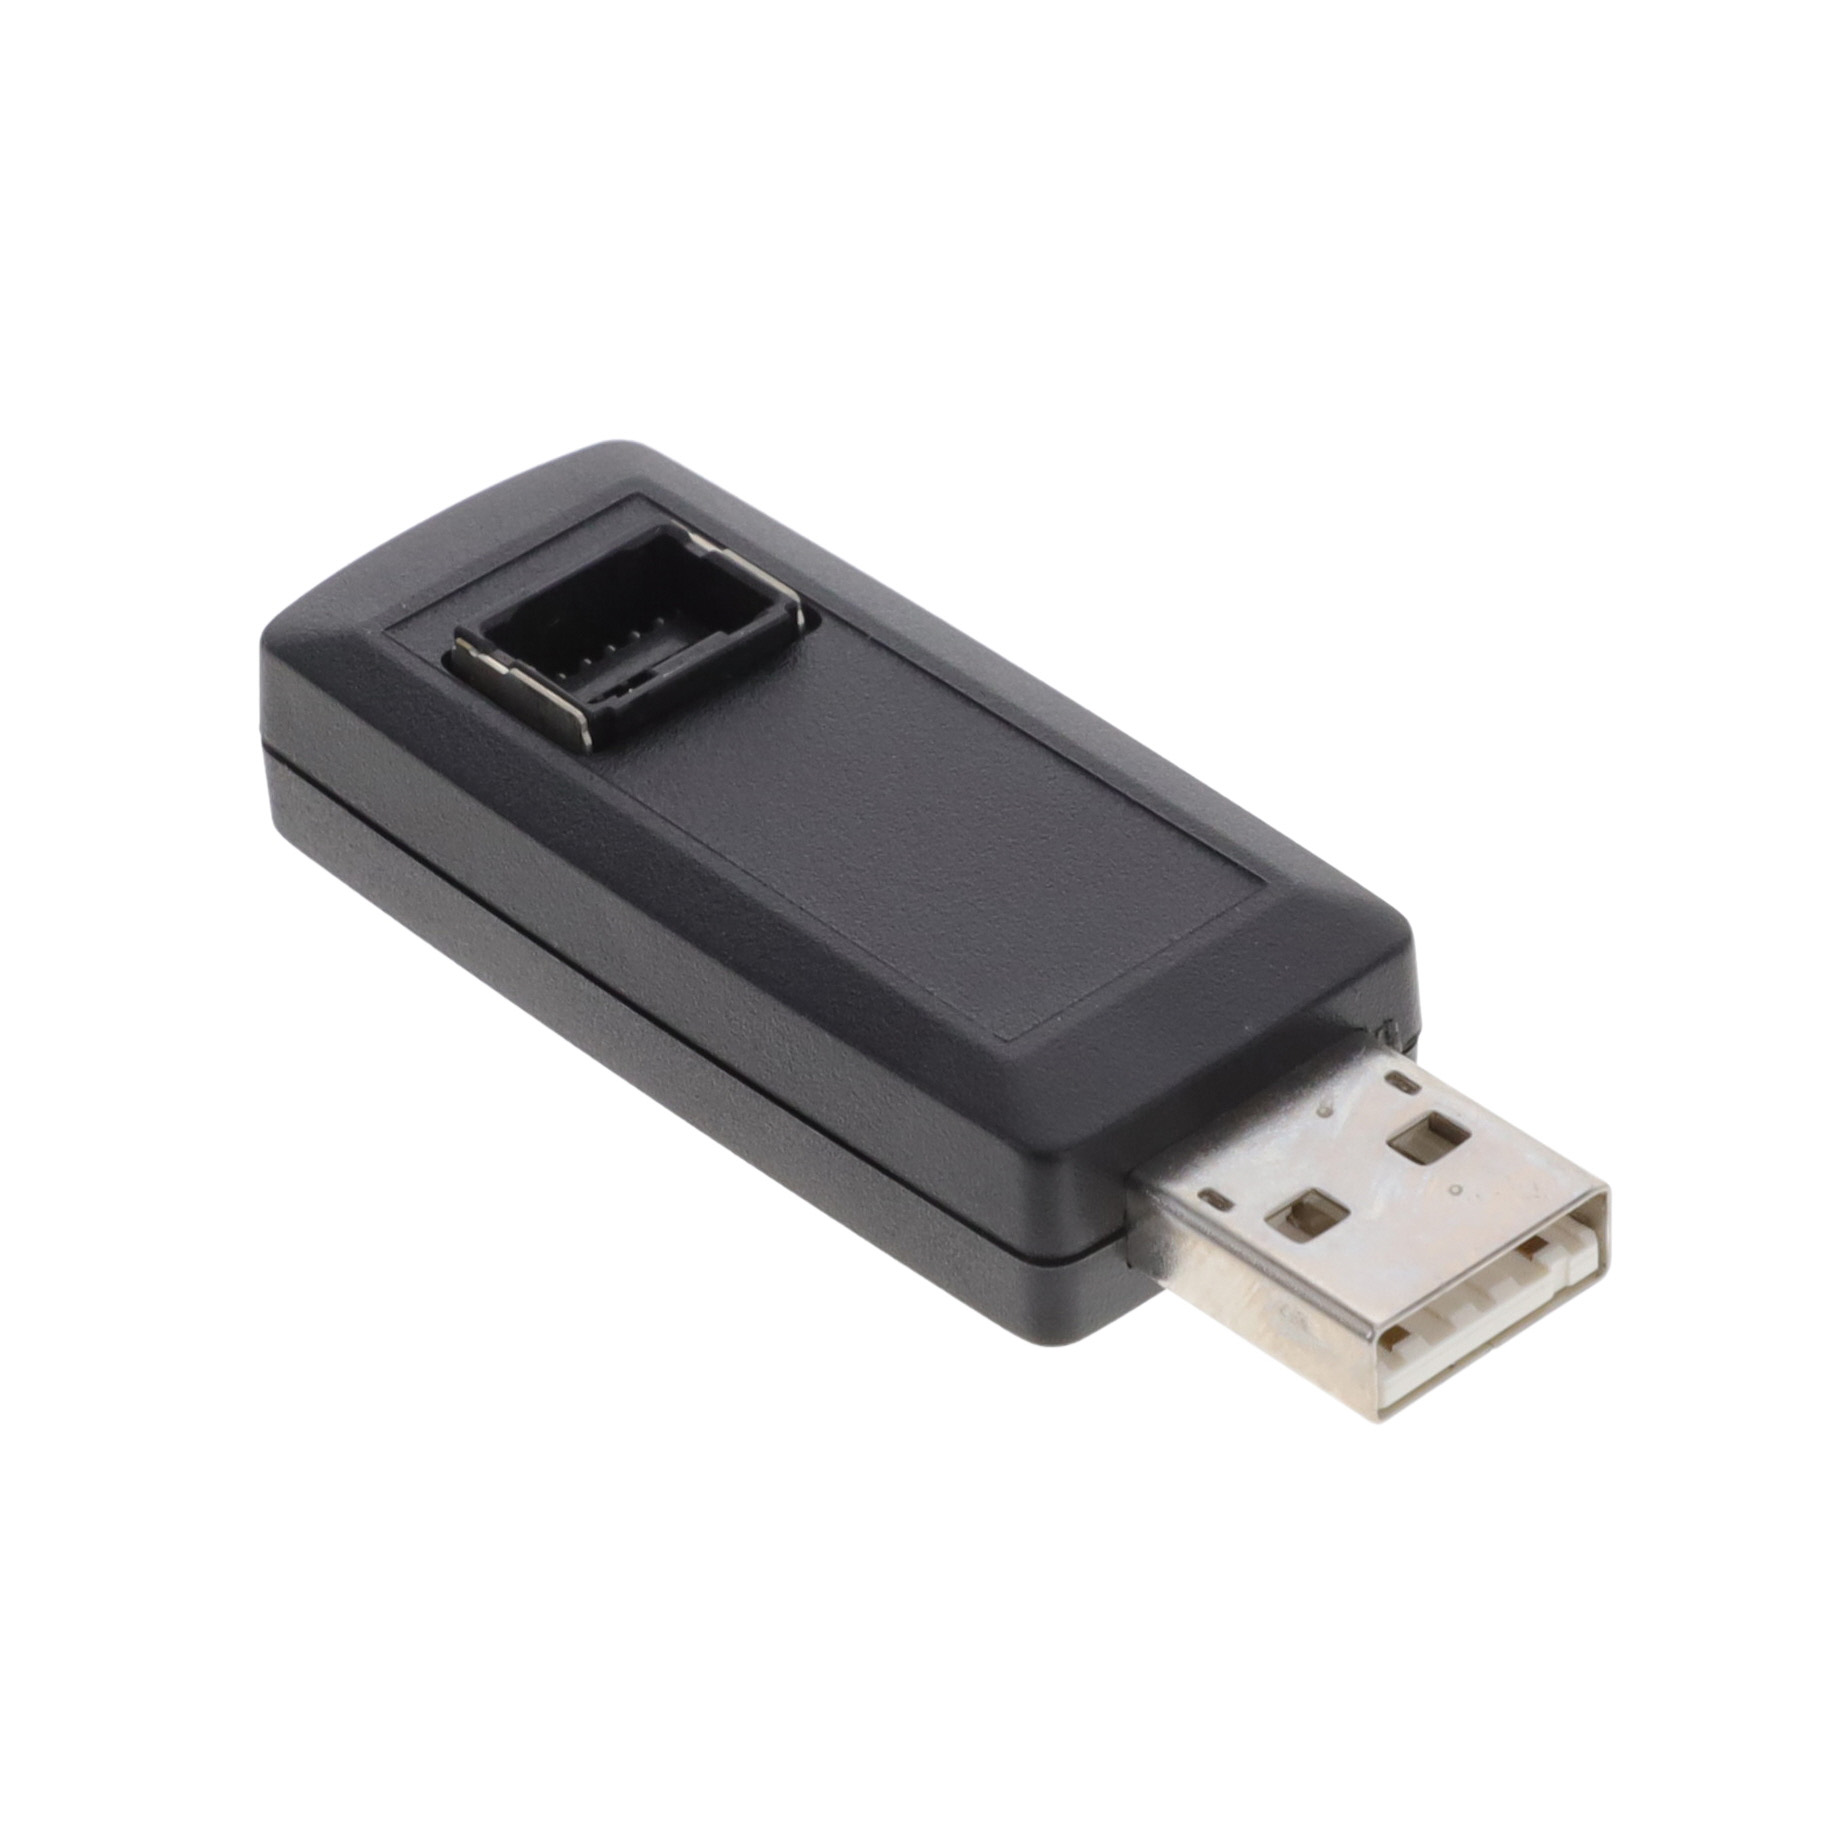 【CA-USB-CONV】USB CONVERTER FOR CA-MP-MTI-12